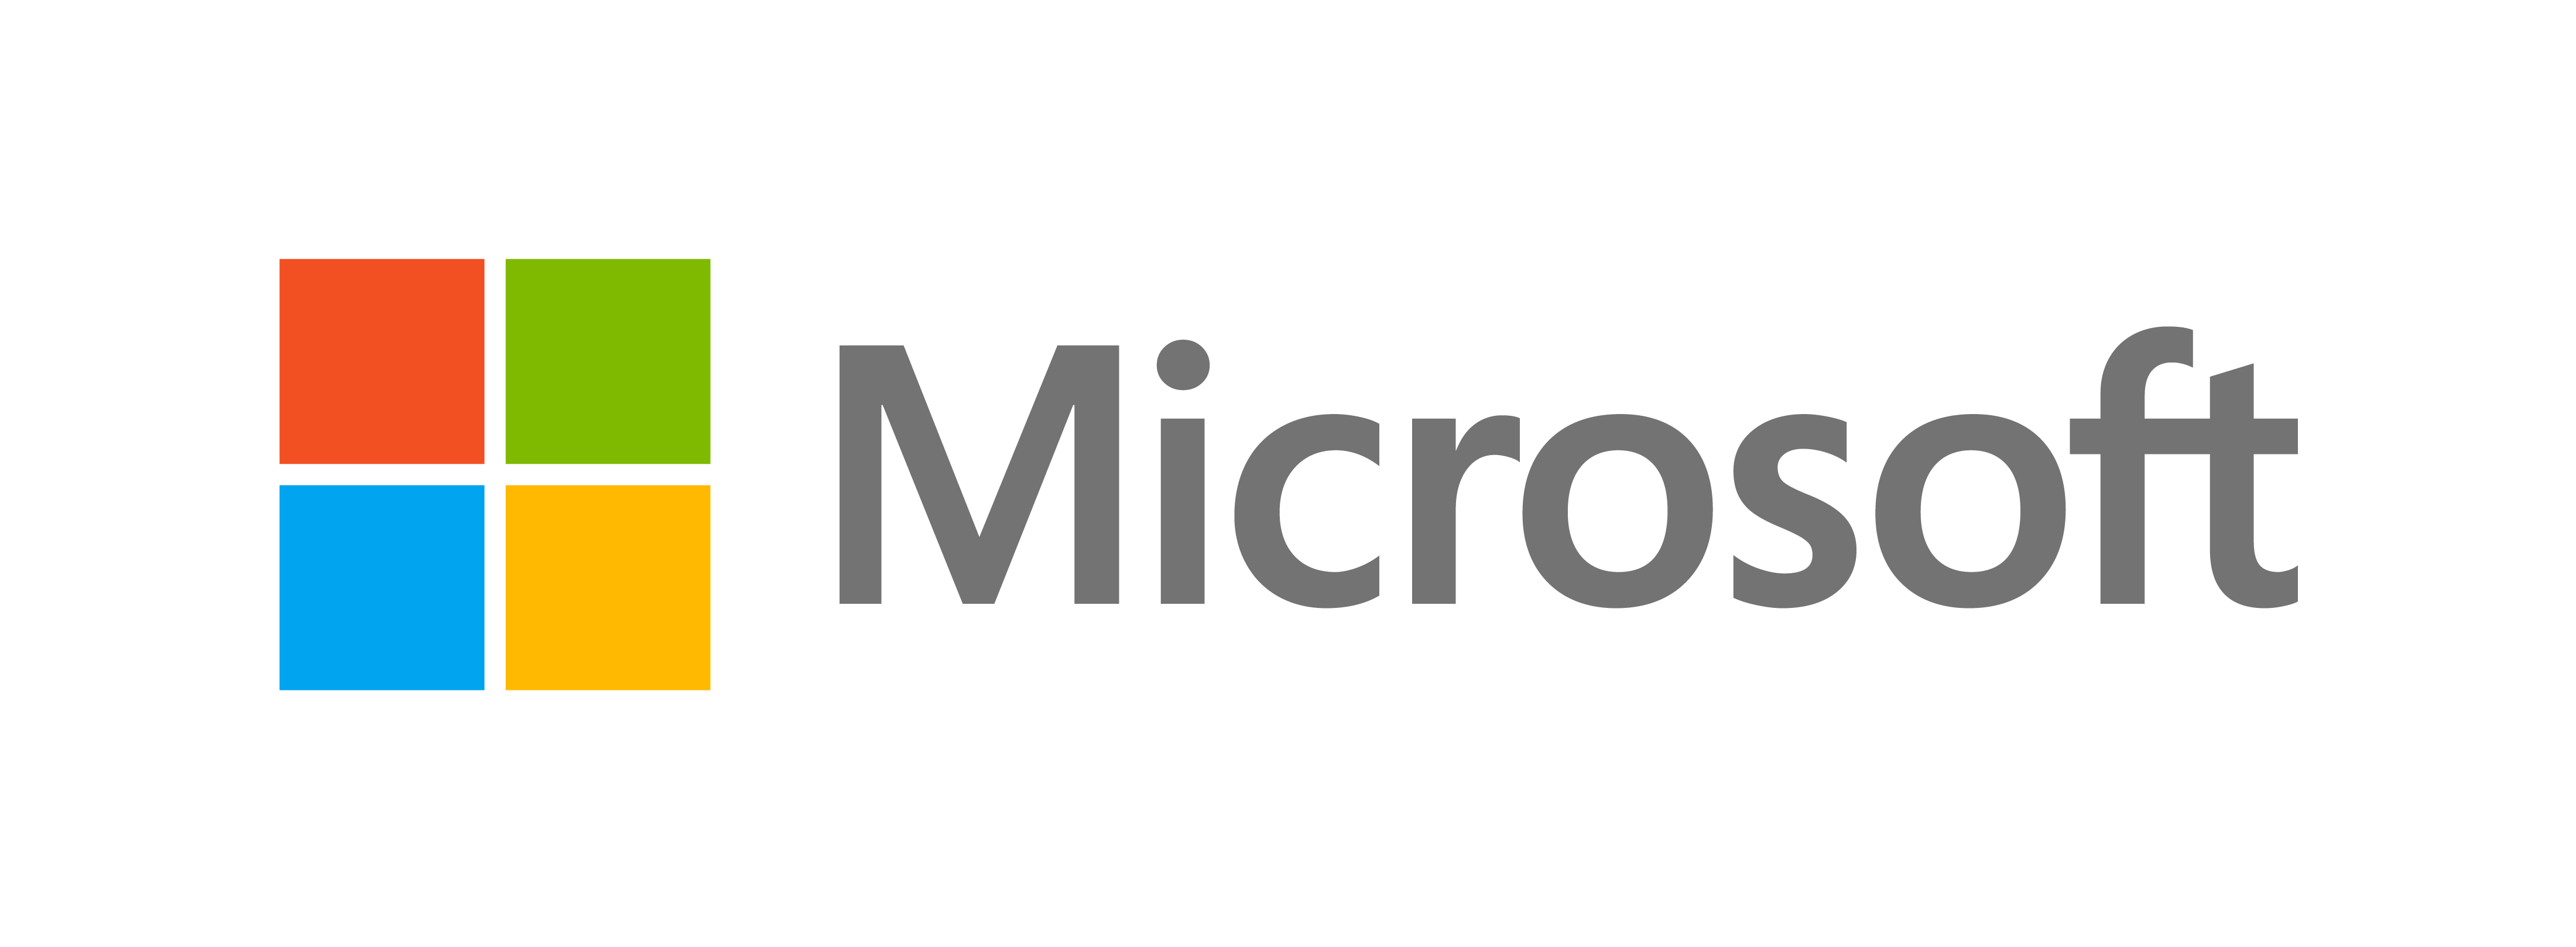 Microsoft Office Home and Business 2019, (Word, Excel, Powerpoint, Outlook) - ESD, pre-owned - 1 user - activeer met code, activeren binnen 1 maand